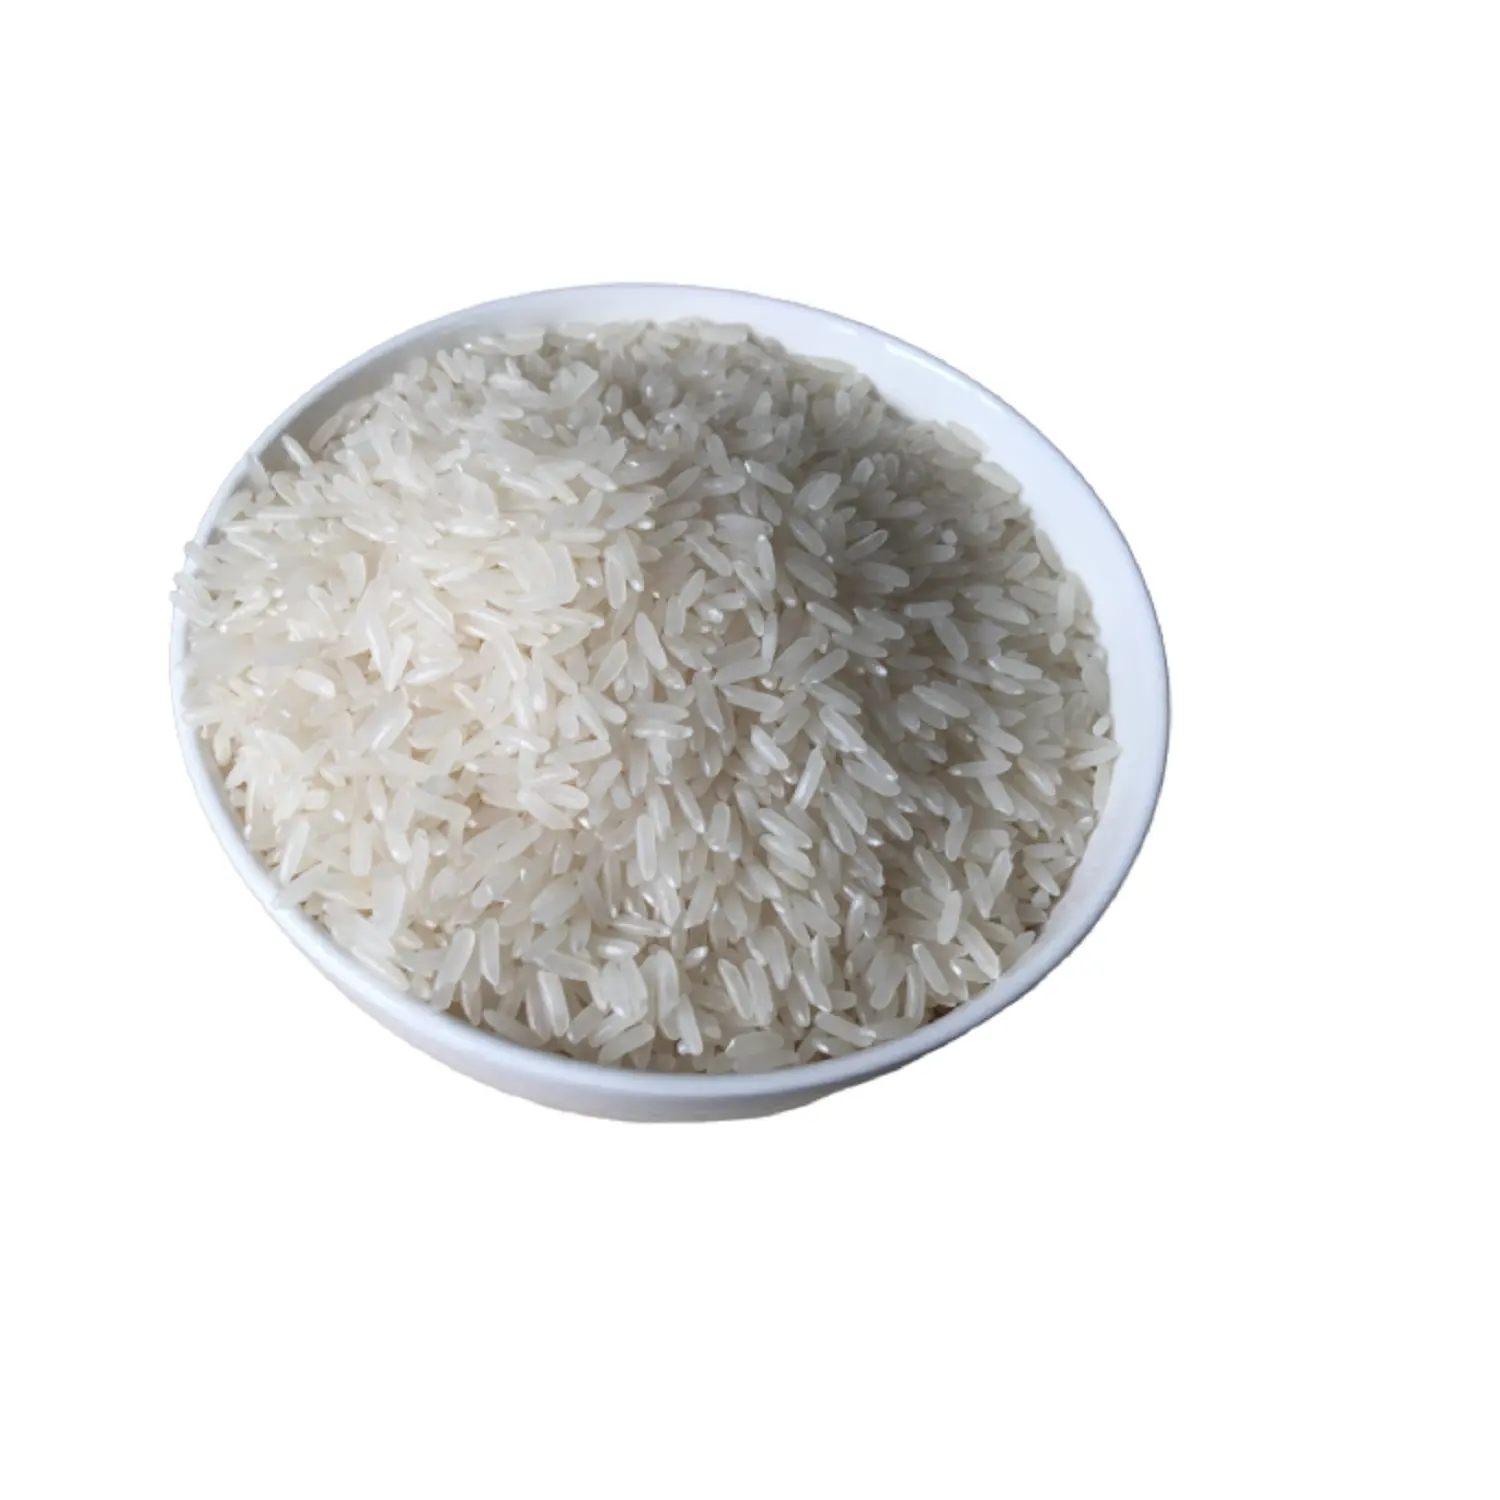 Горячая распродажа, качественная тайская длиннозерная белая рисовая 5%, сломанная индейка